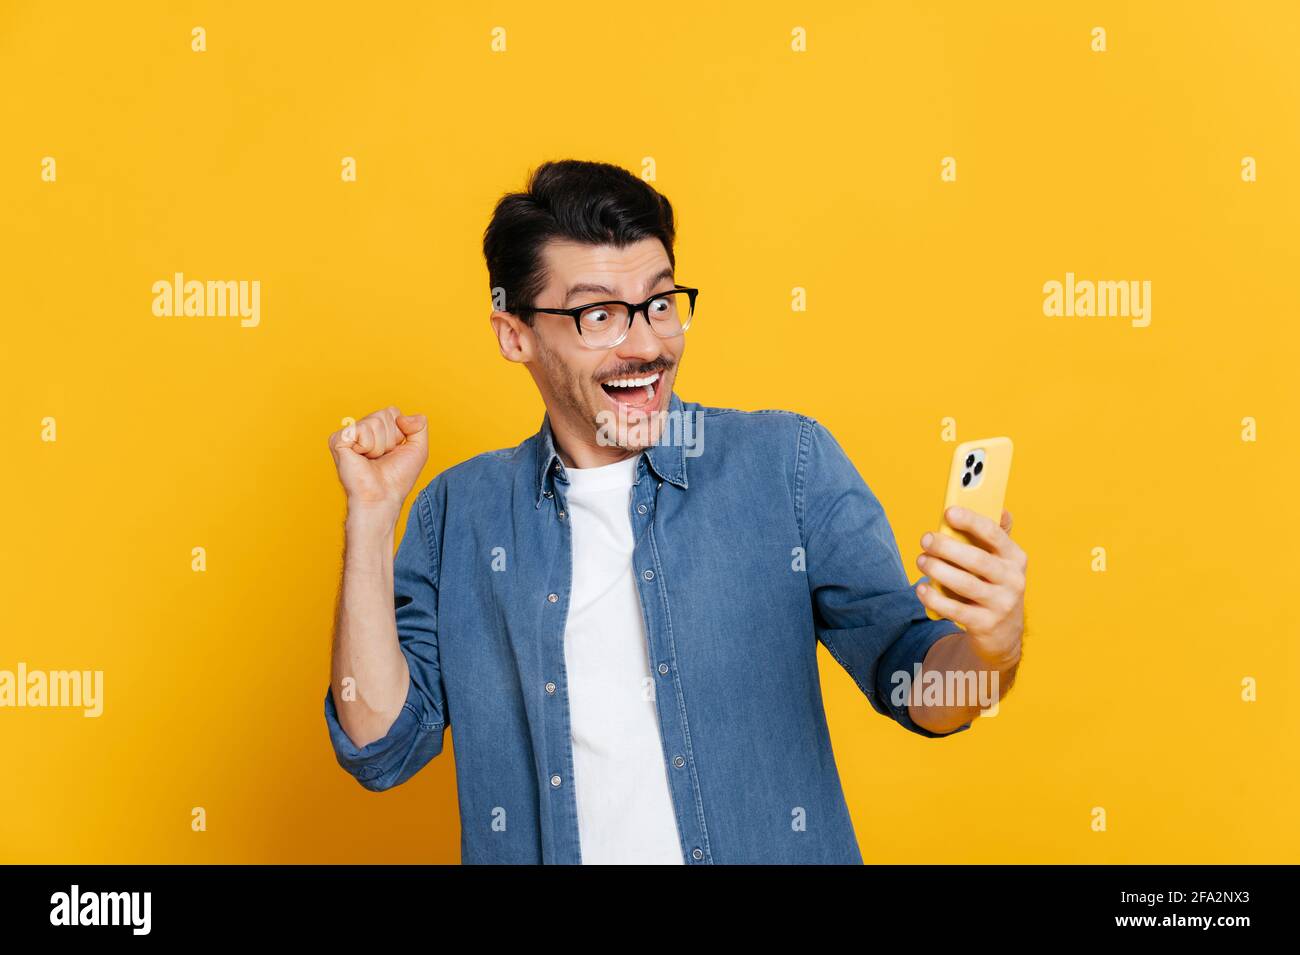 Stauned fröhlich aufgeregt stilvolle kaukasischen Kerl hält Smartphone, erhalten unerwartete Nachrichten, gewinnen, steht auf isoliertem orangefarbenen Hintergrund, fröhlichen Gesichtsausdruck, toothy Lächeln, gestikulieren mit Faust Stockfoto